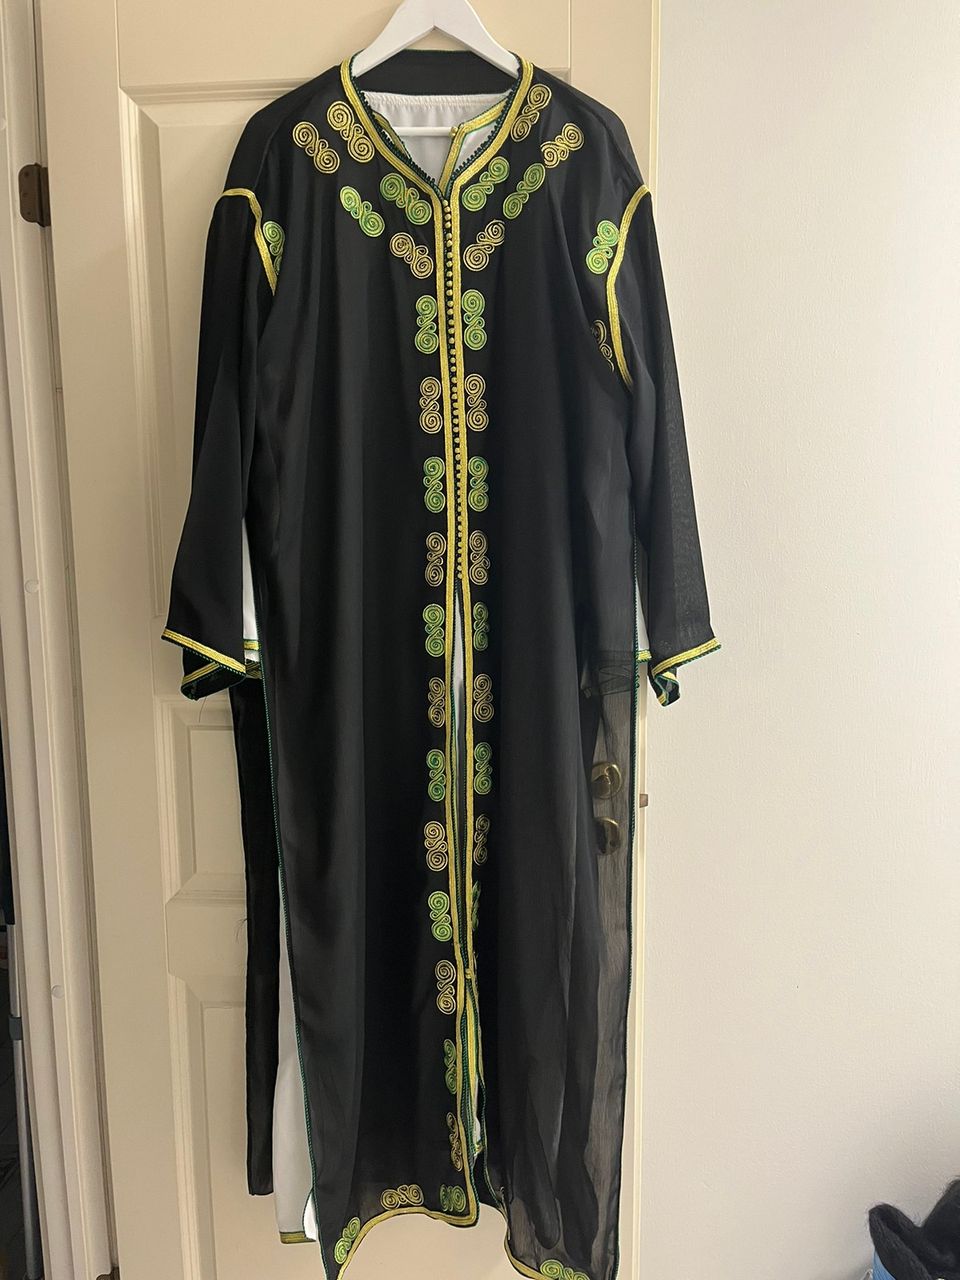 Käyttämätön mekko marokosta